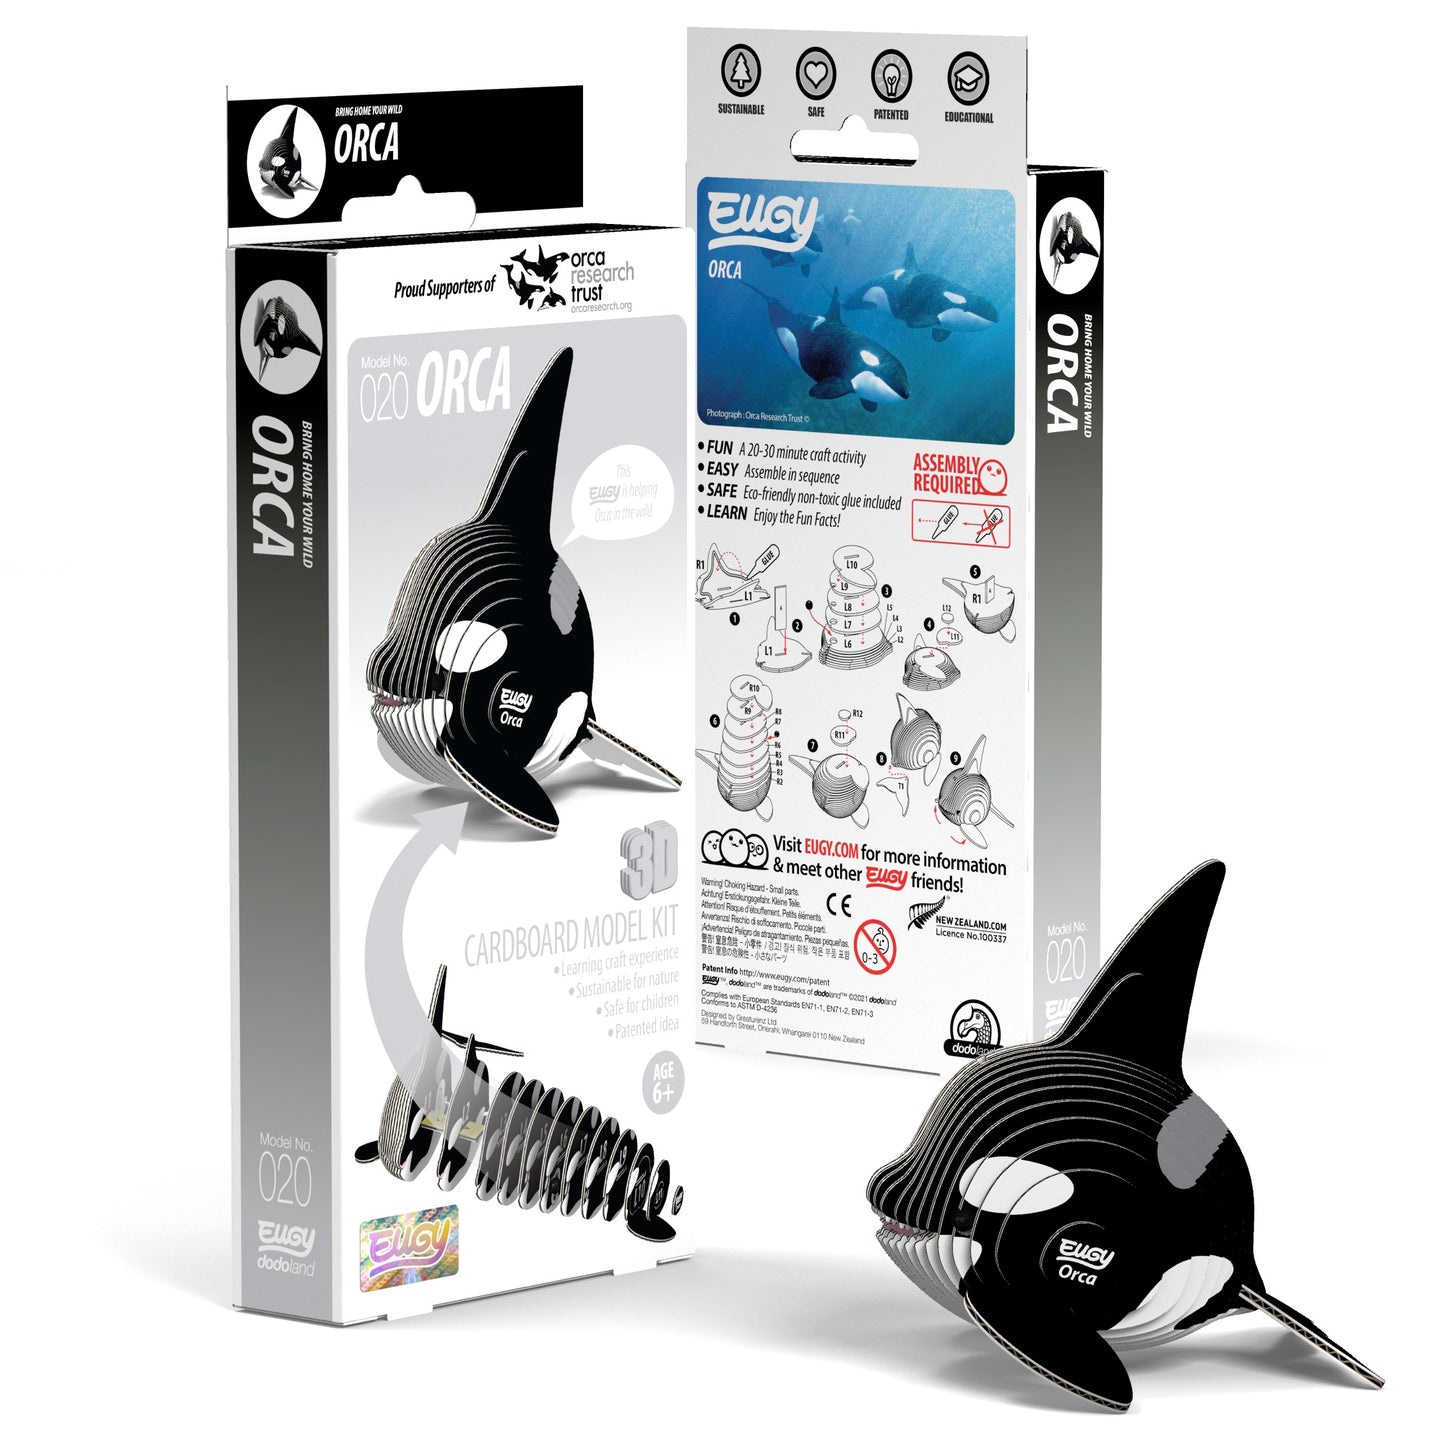 3D ORCA ( 020 )